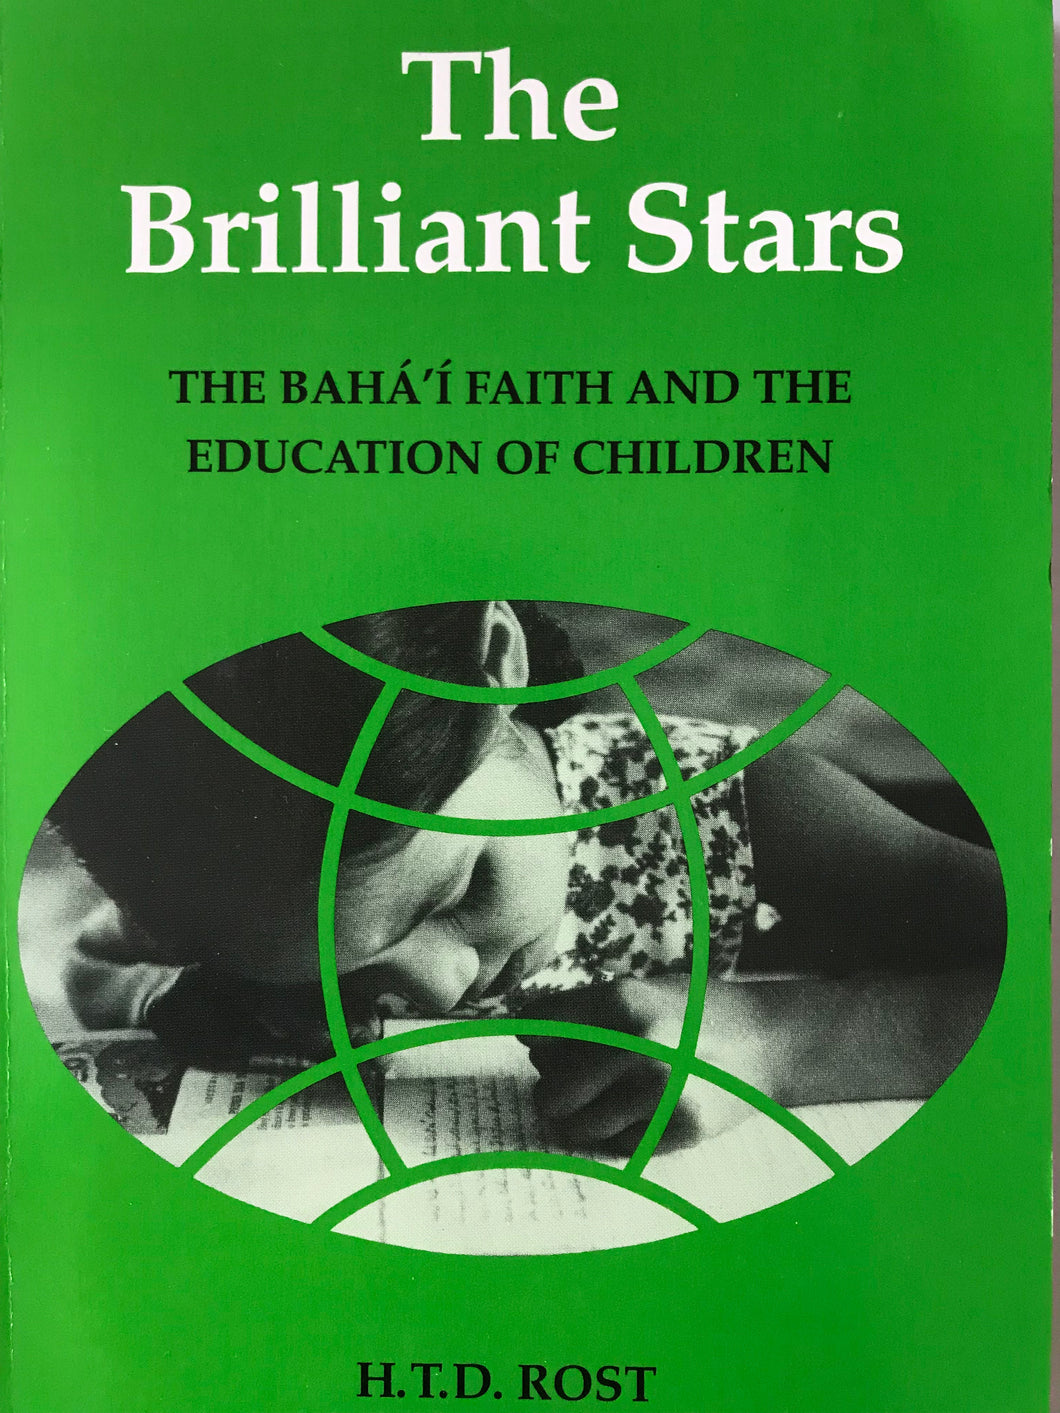 The Brilliant Stars